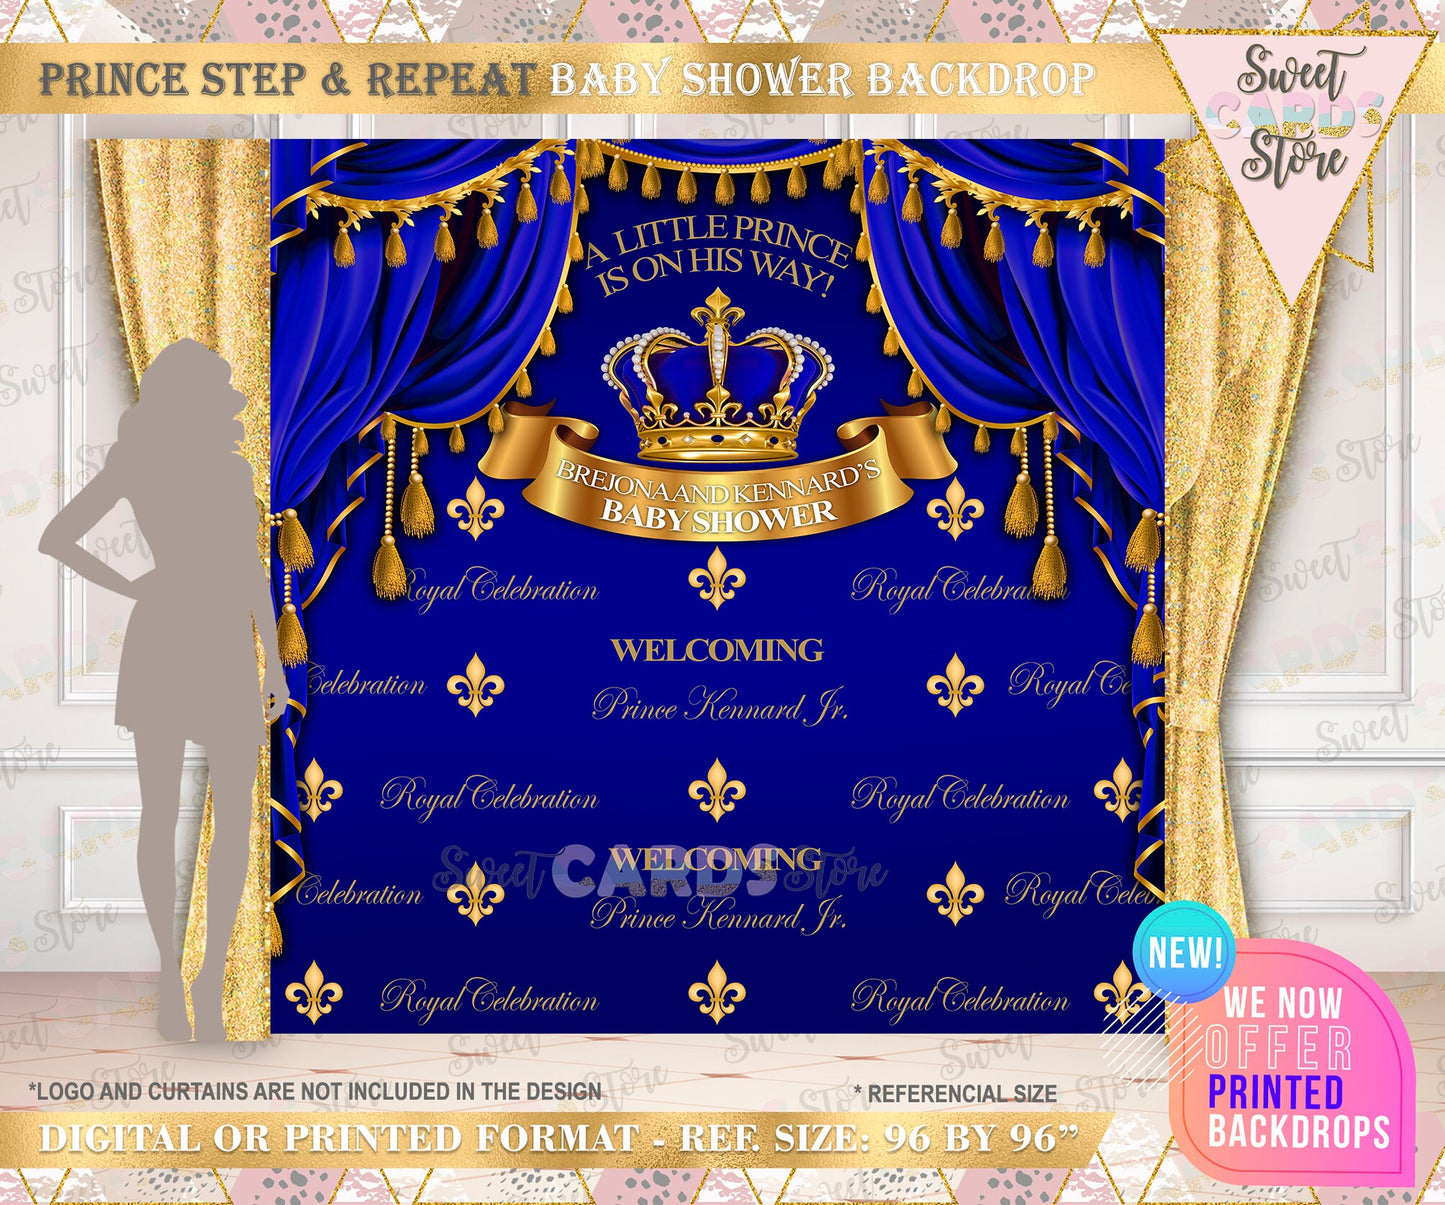 Royal Prince step and repeat Printable Backdrop, Royal prince backdrop, Little prince backdrop, Royal Prince Banner Royal Prince baby shower